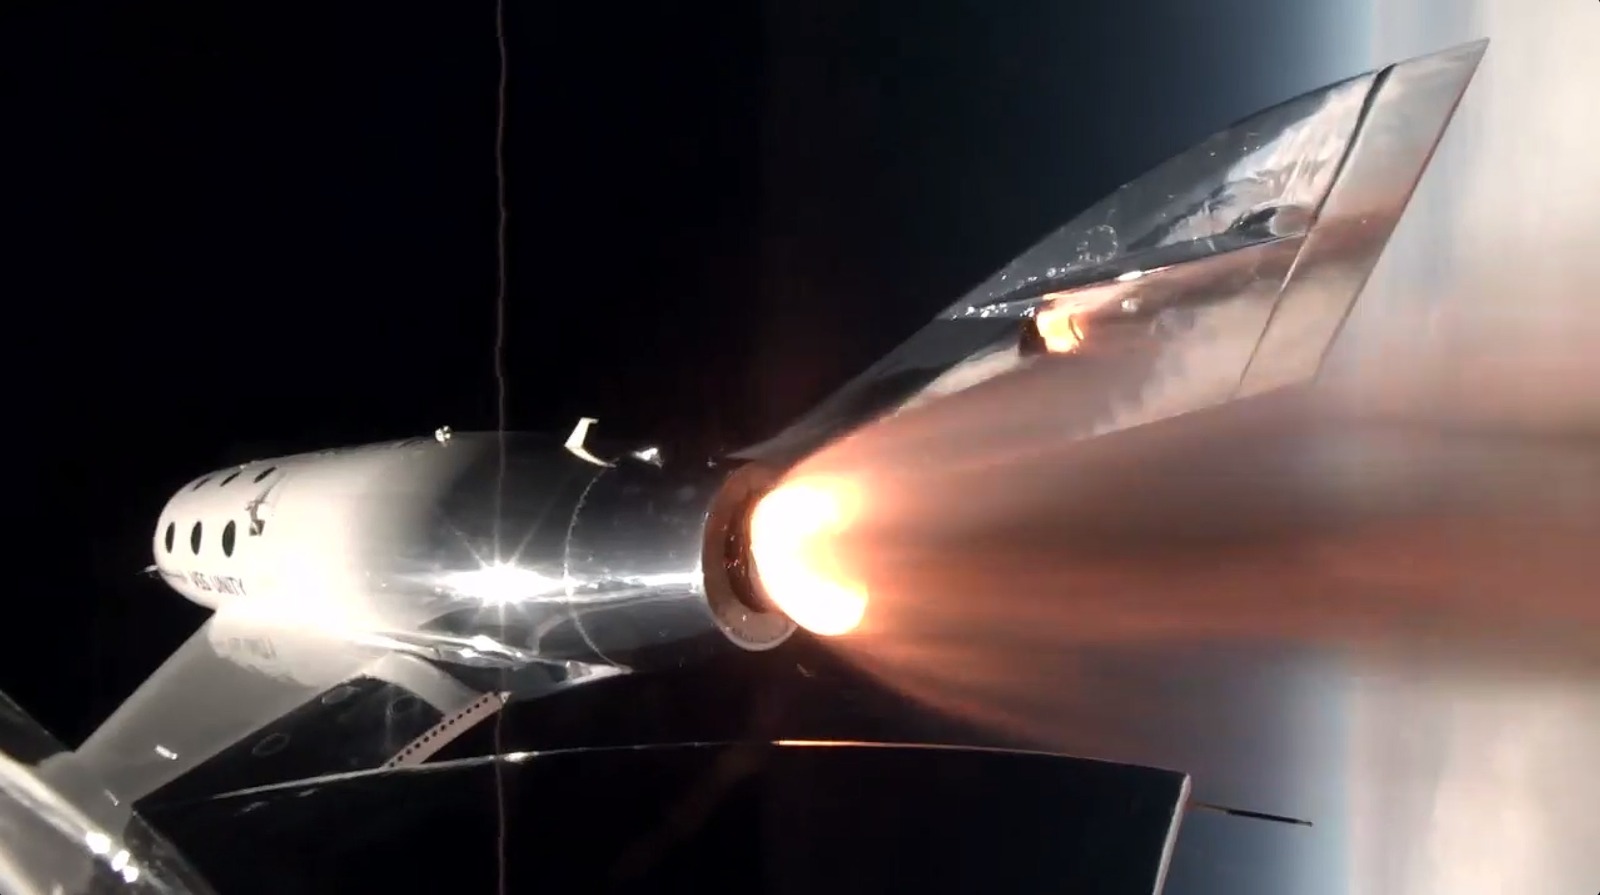 Virgin Galactic lanza el avión espacial VSS Unity para su último vuelo espacial suborbital con una tripulación de 6 personas (fotos)